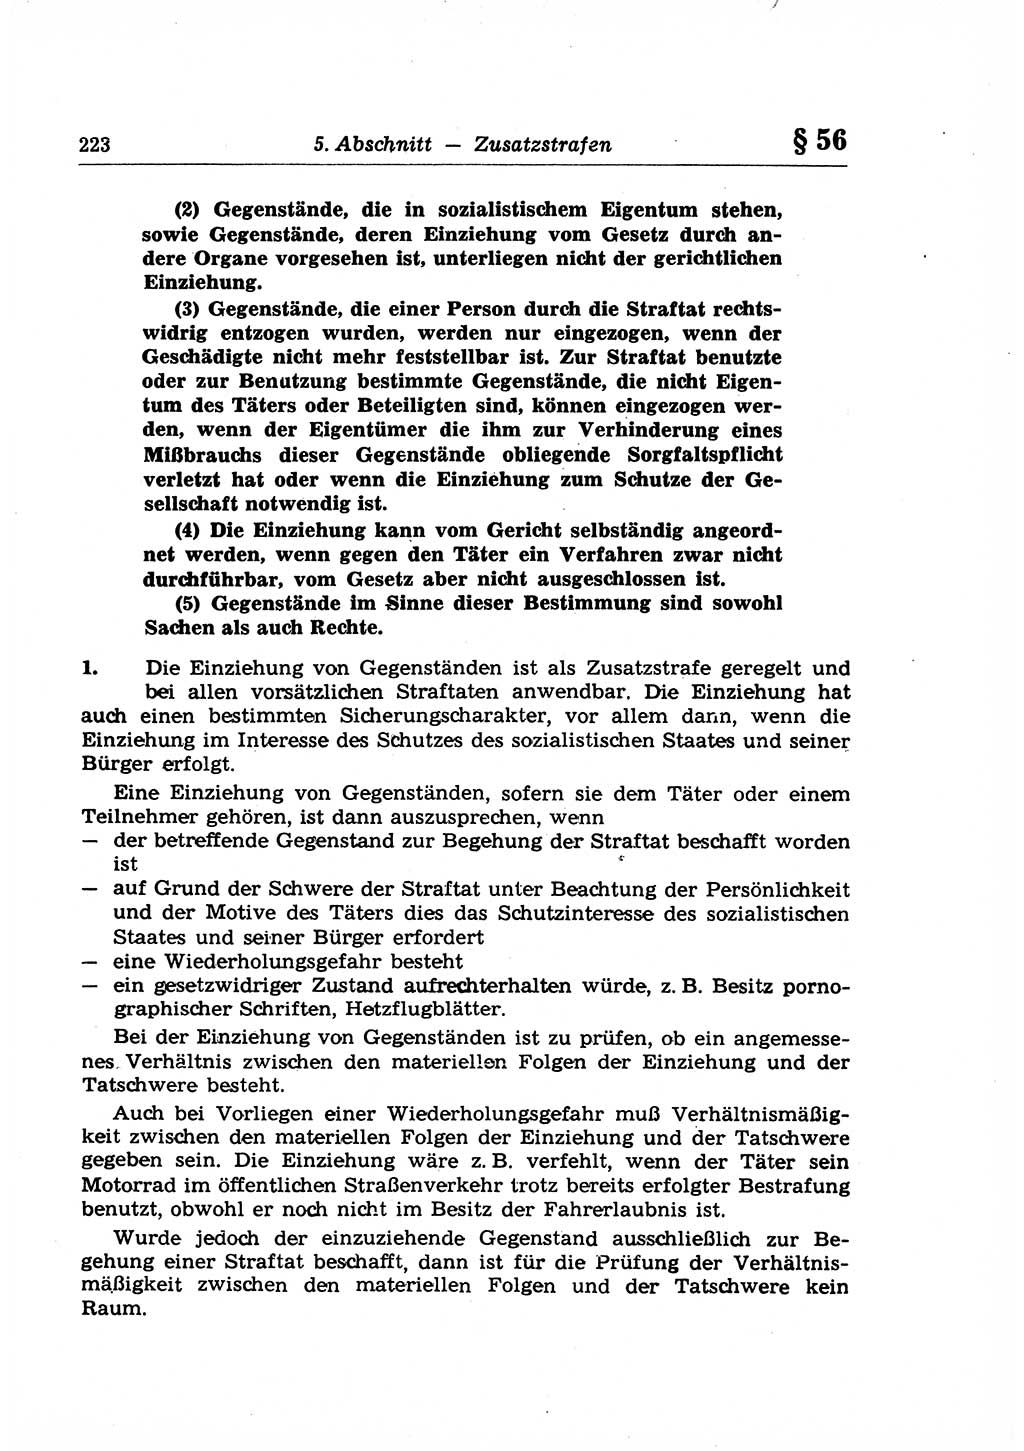 Strafrecht der Deutschen Demokratischen Republik (DDR), Lehrkommentar zum Strafgesetzbuch (StGB), Allgemeiner Teil 1969, Seite 223 (Strafr. DDR Lehrkomm. StGB AT 1969, S. 223)